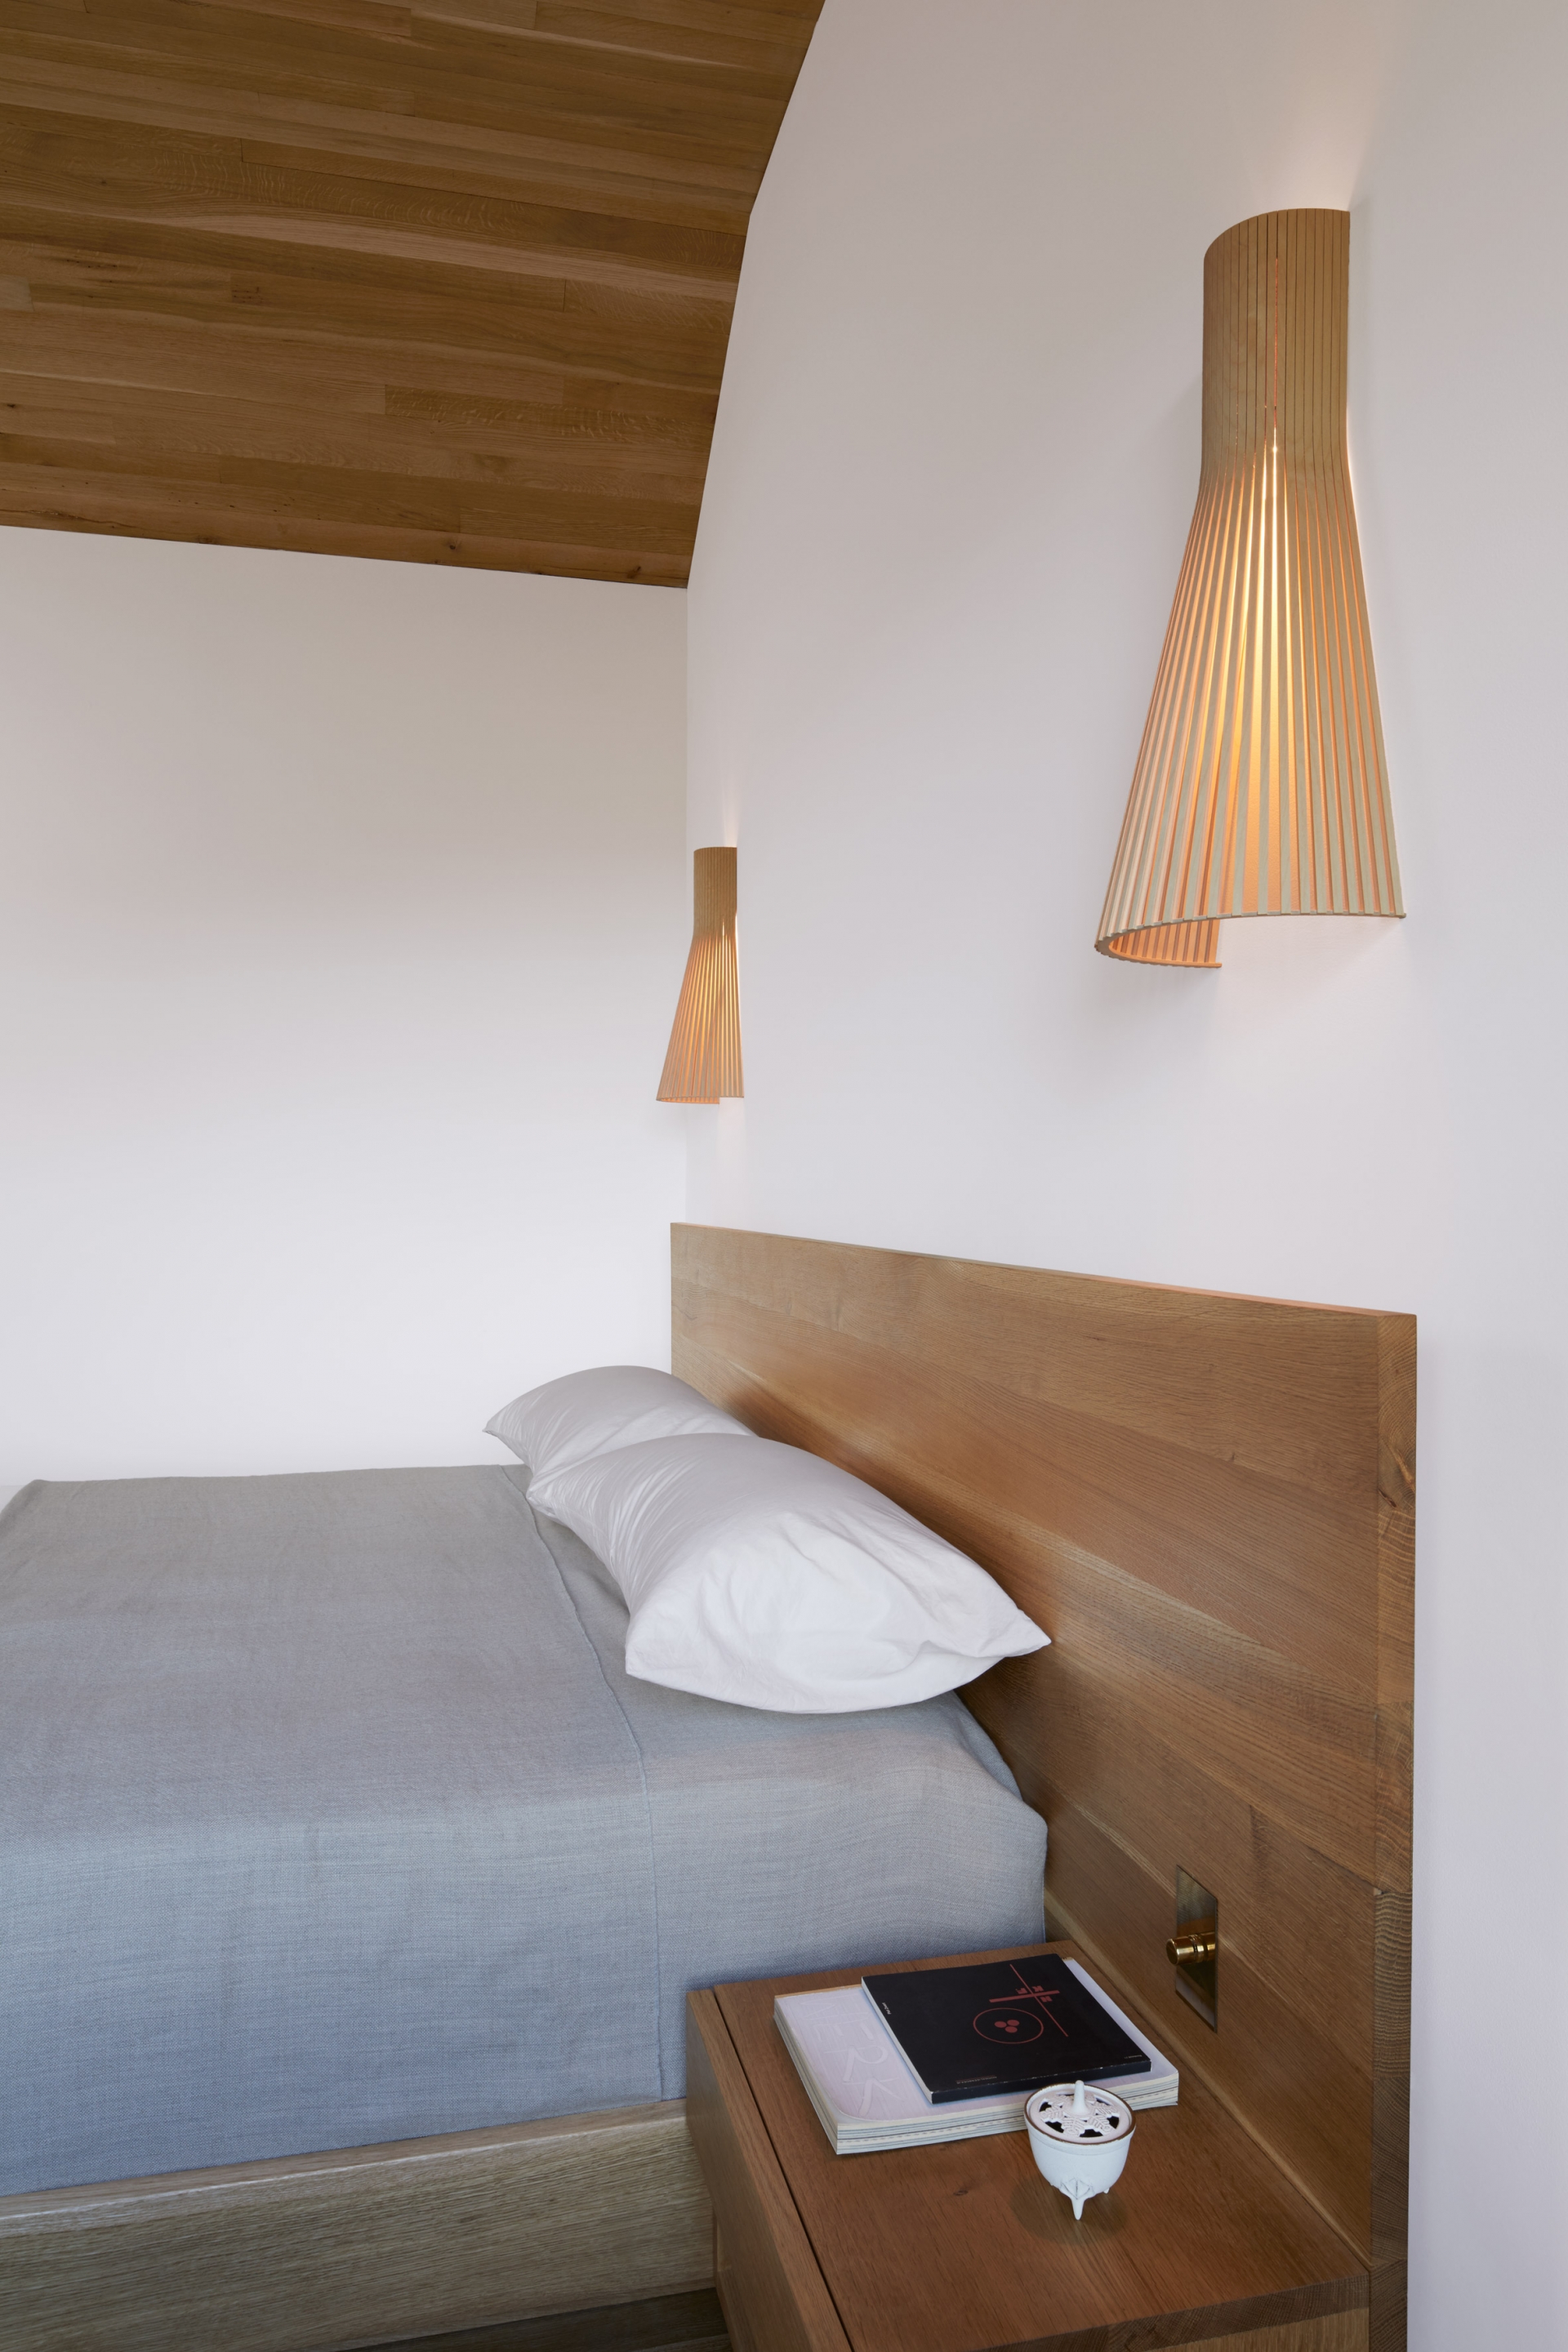 Phòng ngủ của bố mẹ được thiết kế tối giản với khung giường gỗ, ga bọc giường màu xám nhẹ nhàng cùng cặp đèn ngủ bằng tre kiểu dáng cổ điển.